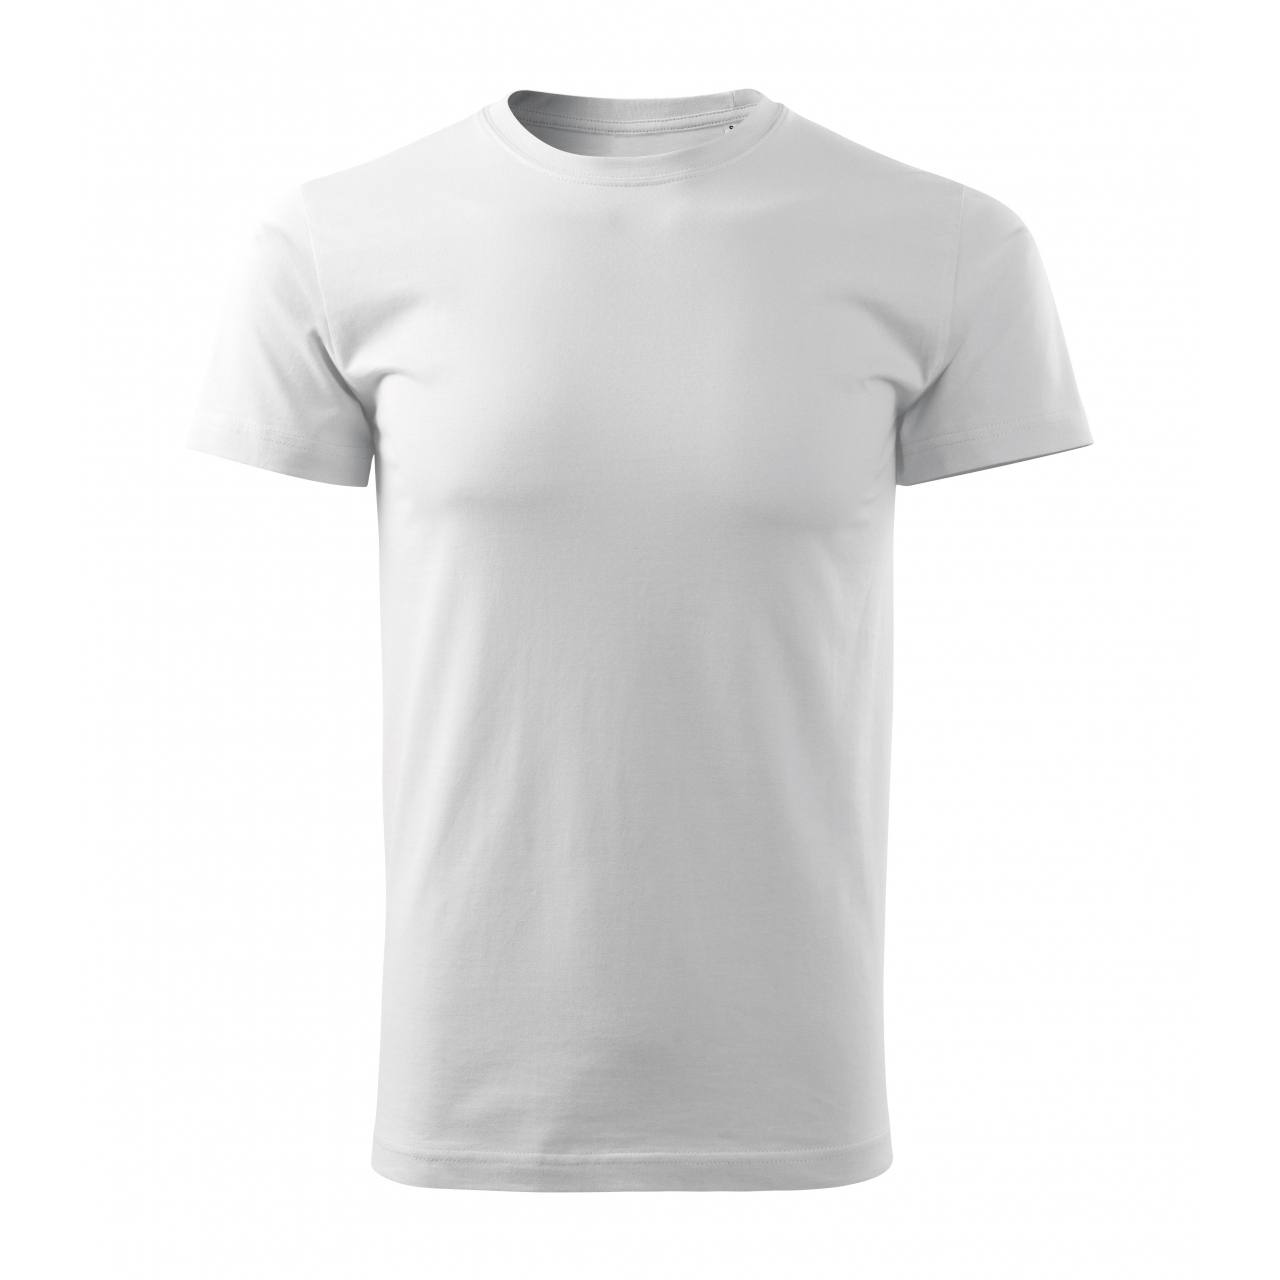 Tričko pánské Malfini Basic Free - bílé, XL